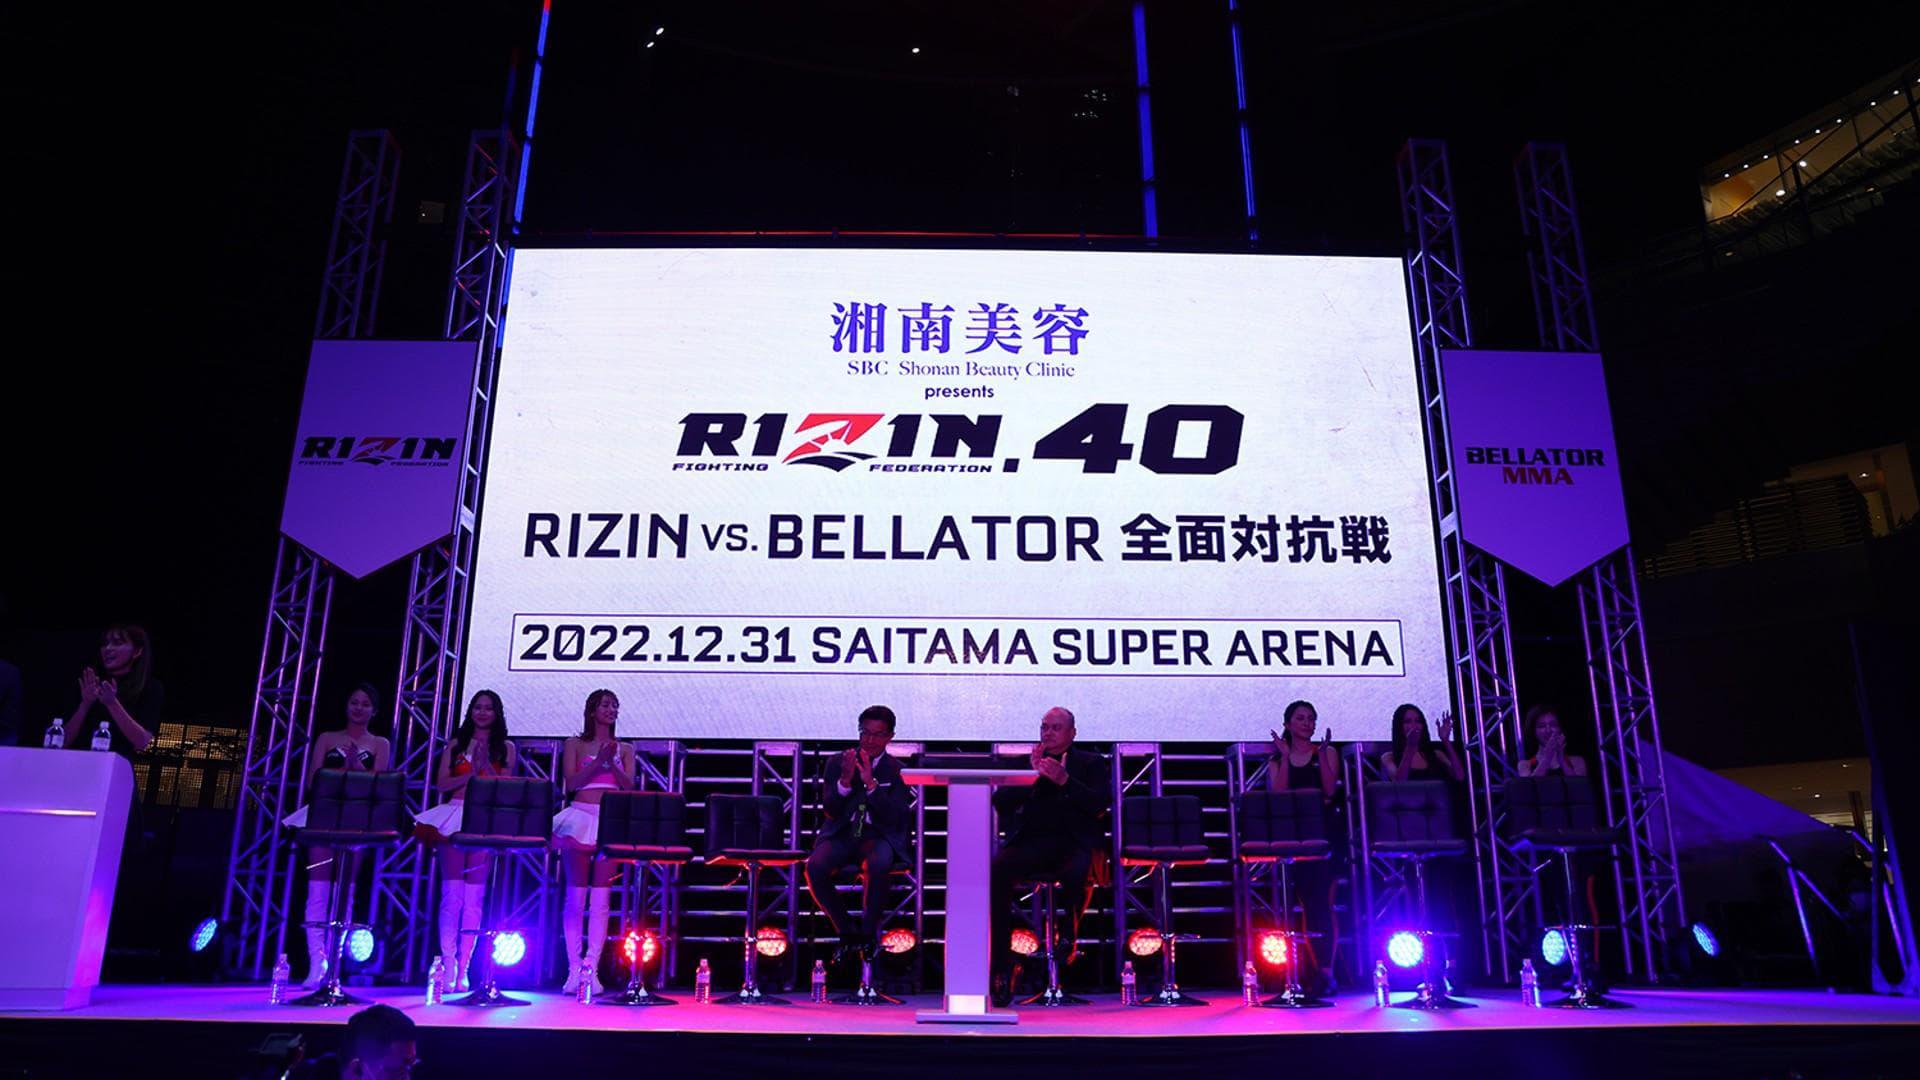 Bellator MMA vs. RIZIN backdrop